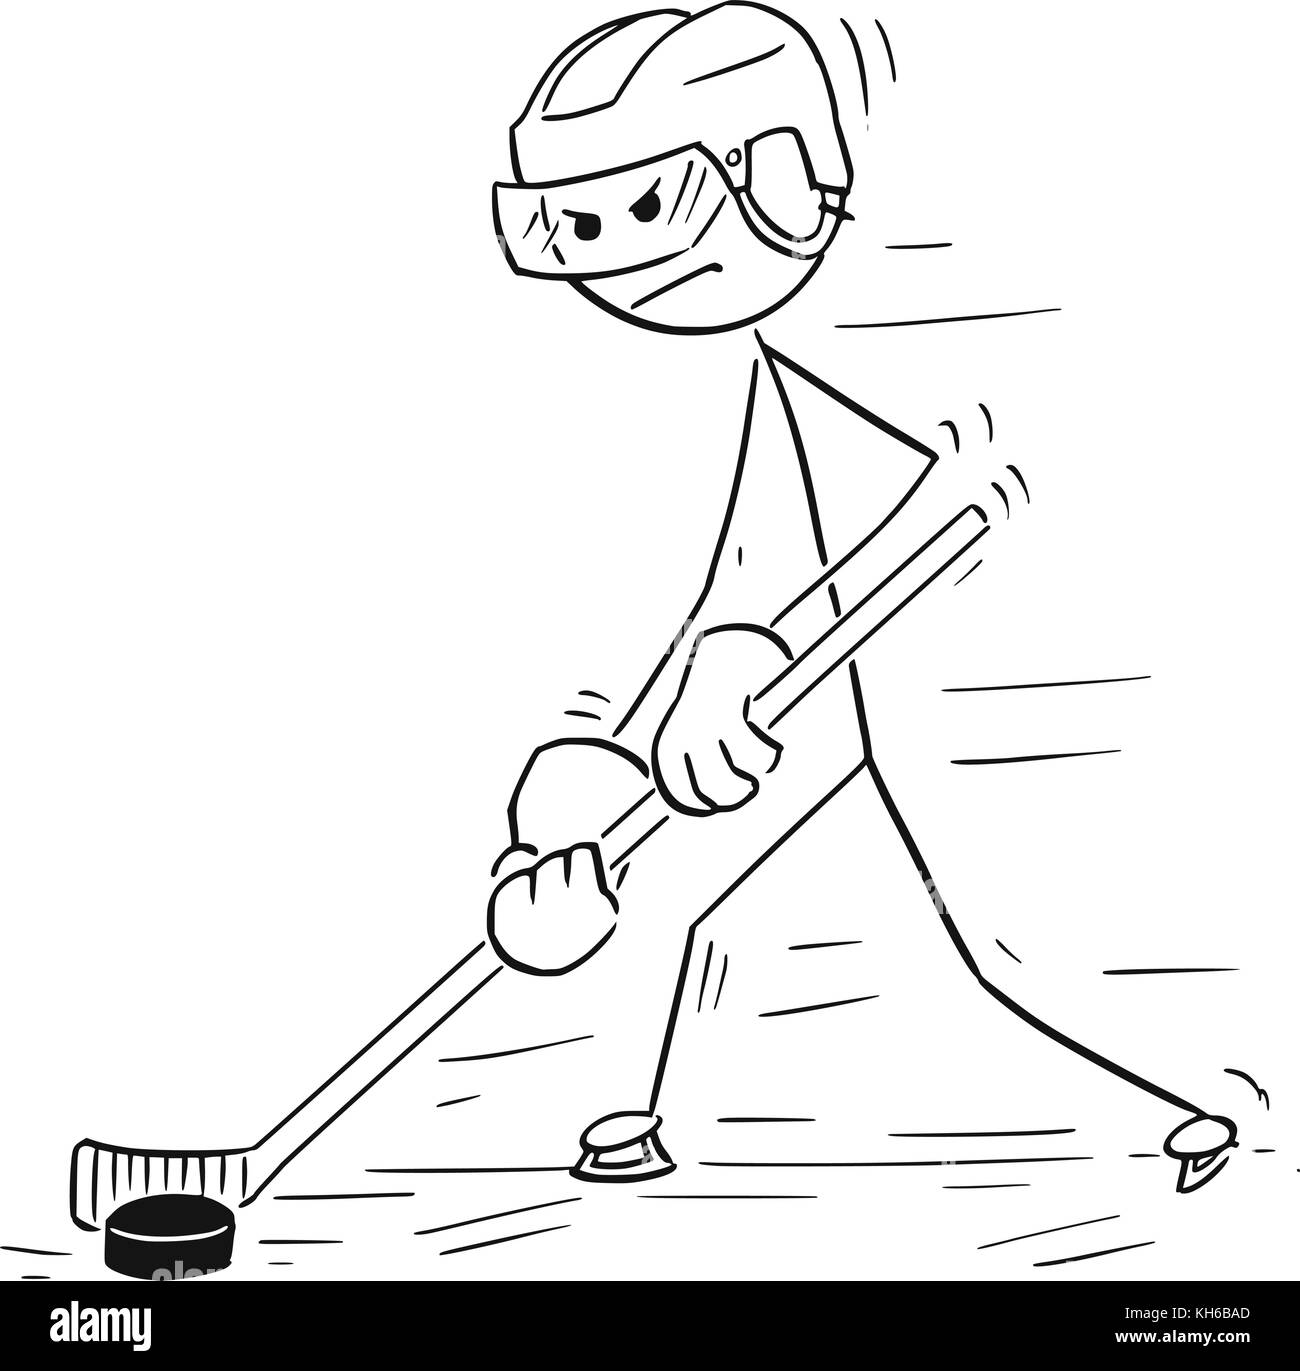 Cartoon stick uomo disegno illustrazione di hockey su ghiaccio giocatore puck di movimentazione ed il pattinaggio in avanti. Illustrazione Vettoriale